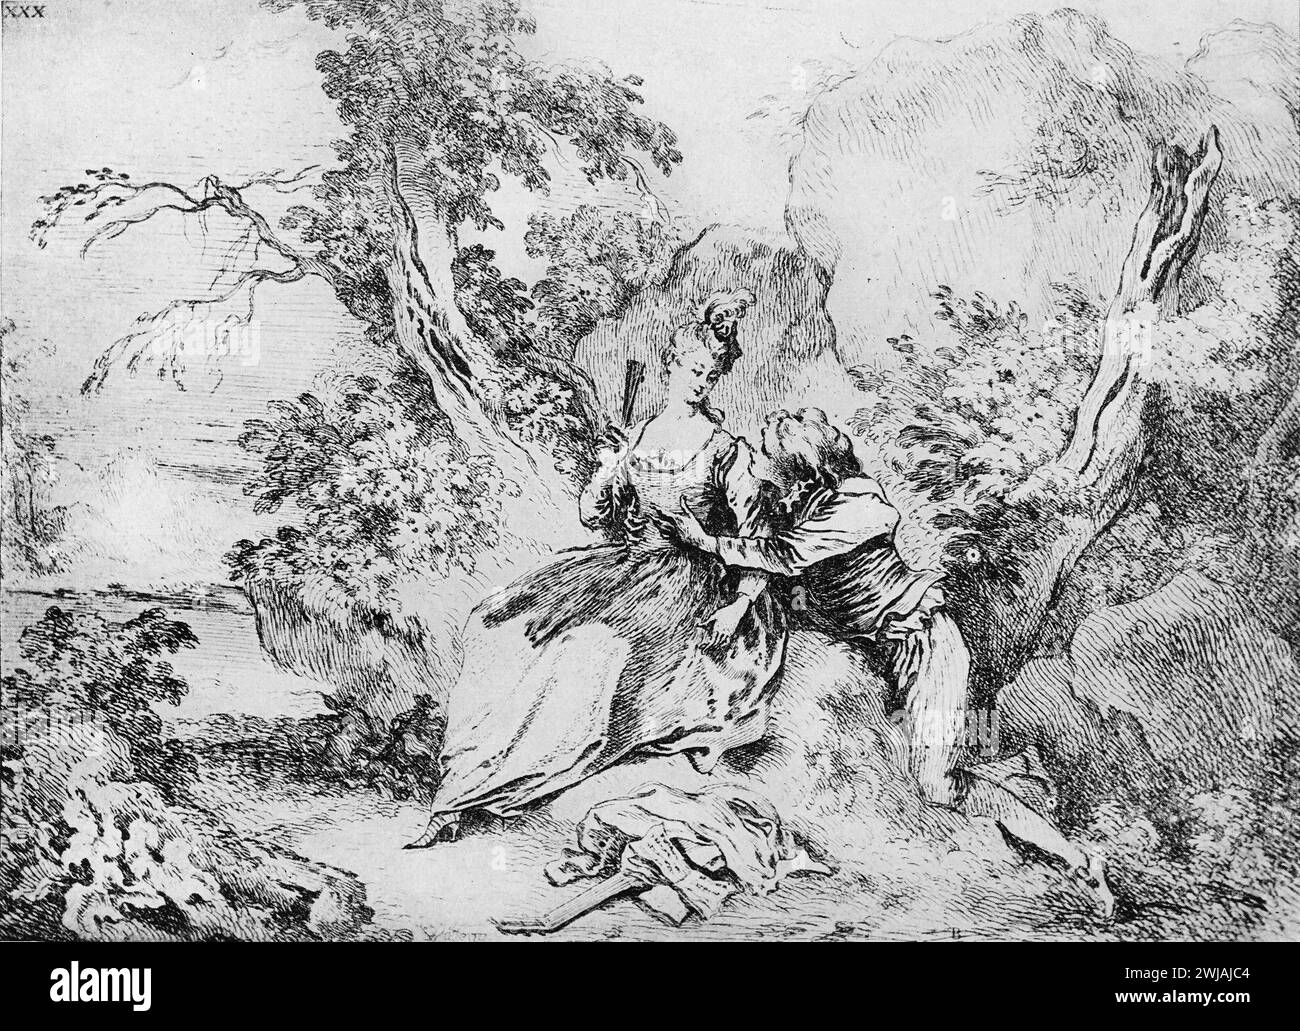 Disegni di "A Pastoral" dell'artista francese, Jean-Antoine Watteau: Black and White Illustration from the Connoisseur, an Illustrated Magazine for Collectors Voll 3 (maggio-agosto 1902) pubblicato a Londra. Foto Stock